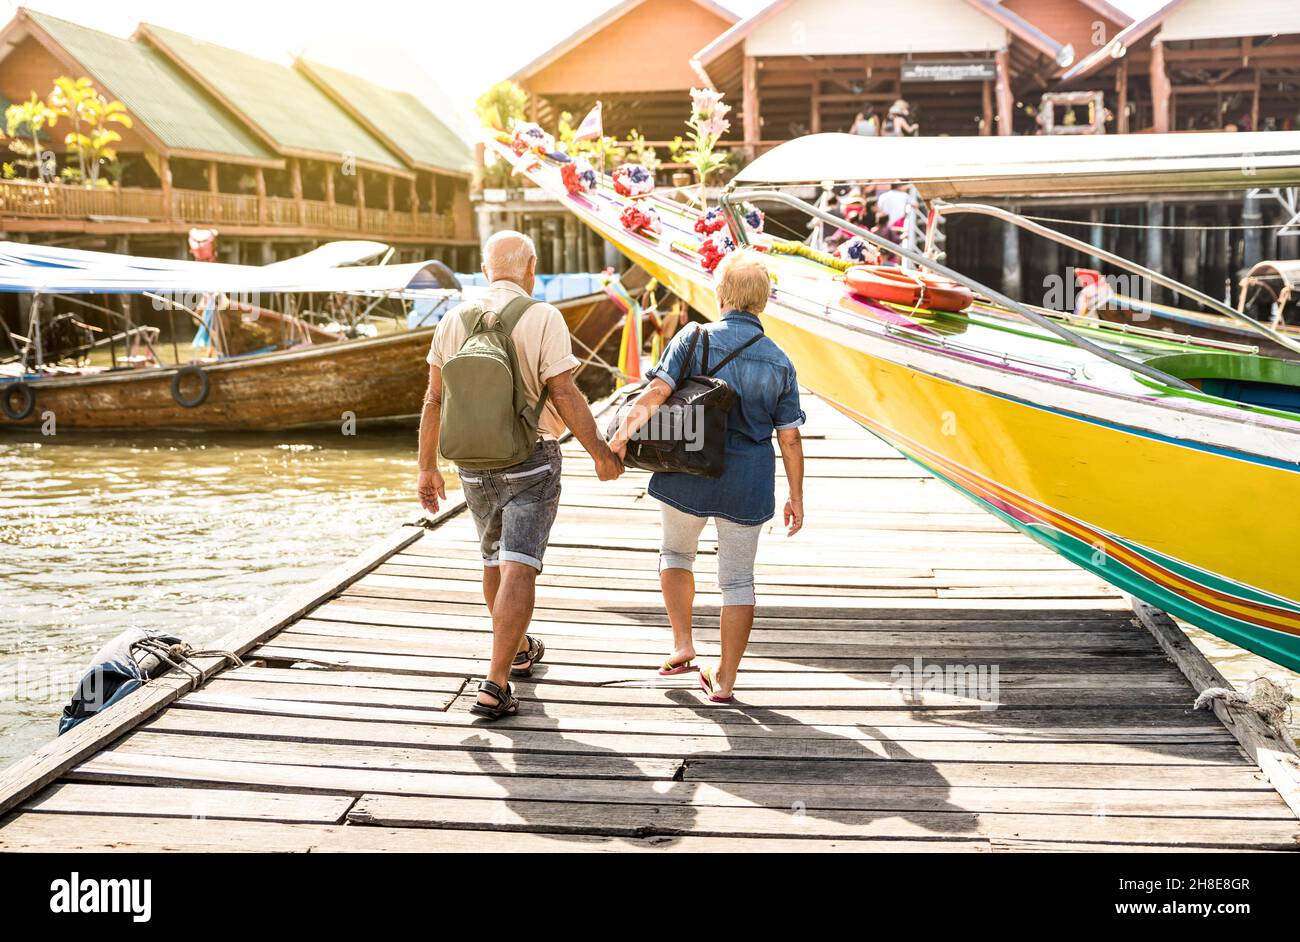 Glückliches Seniorenpaar, das im schwimmenden muslimischen Dorf Koh Panyi Hand hält - Aktives Senioren- und Reise-Lifestyle-Konzept mit älteren Menschen im Ruhestand Stockfoto